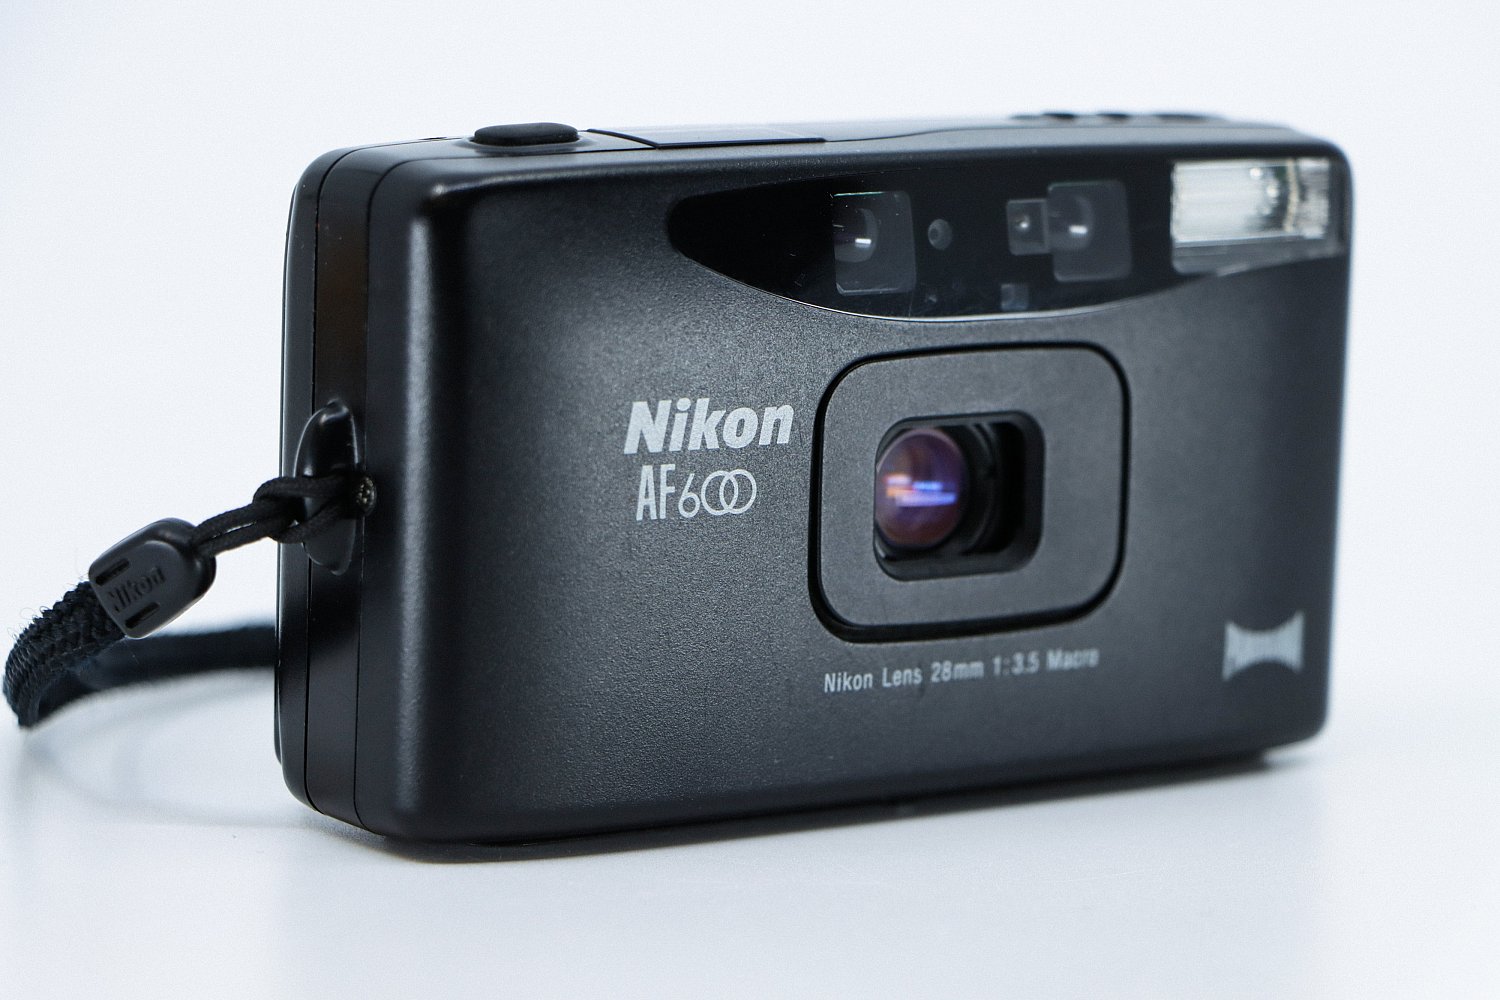  Nikon AF 600 Panorama | IMG_4376.jpg